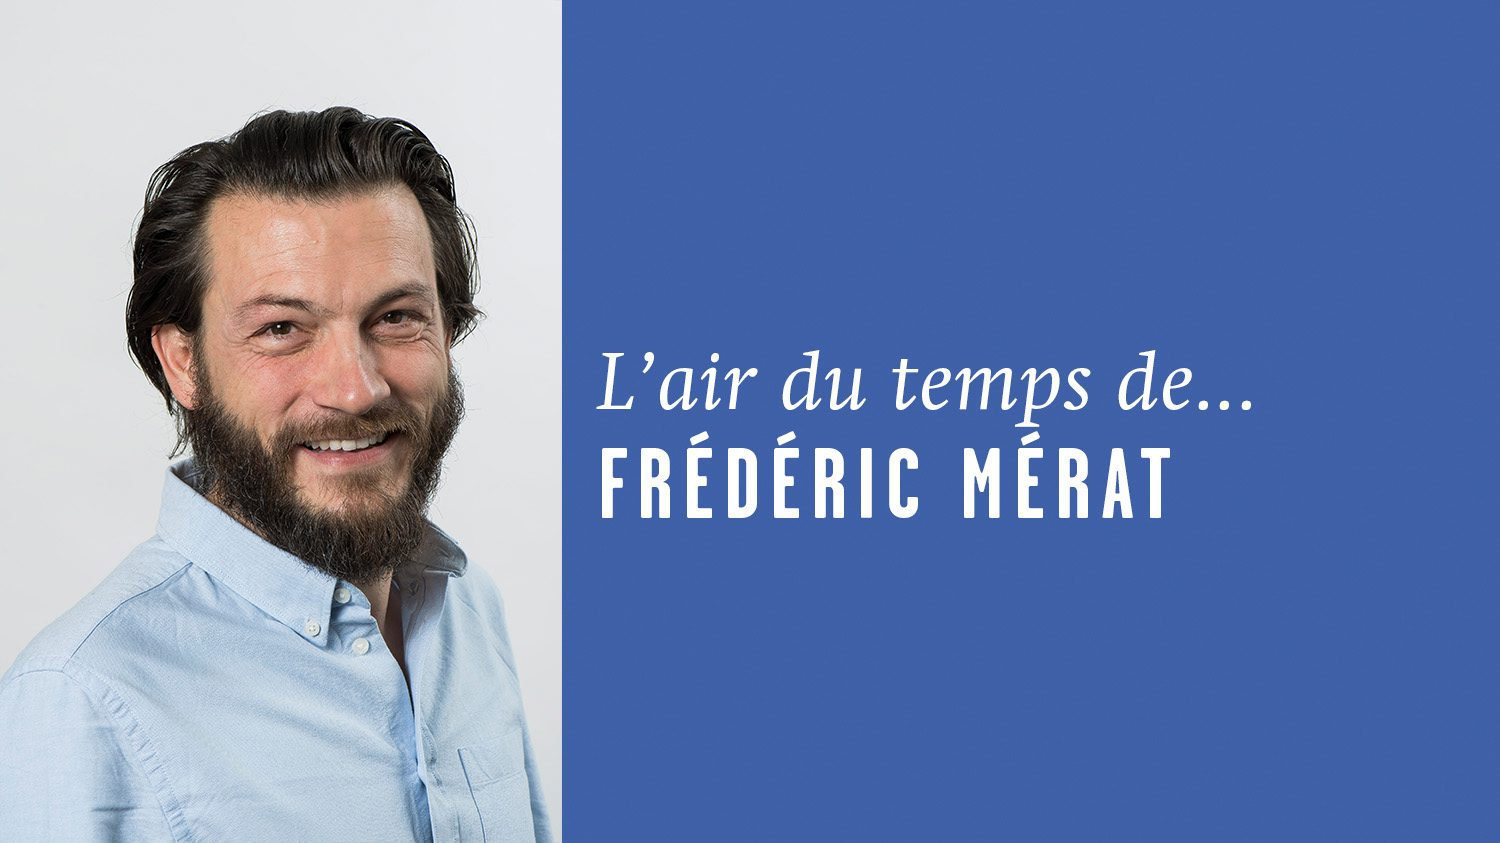 AirDutemps-FredericMerat (8)